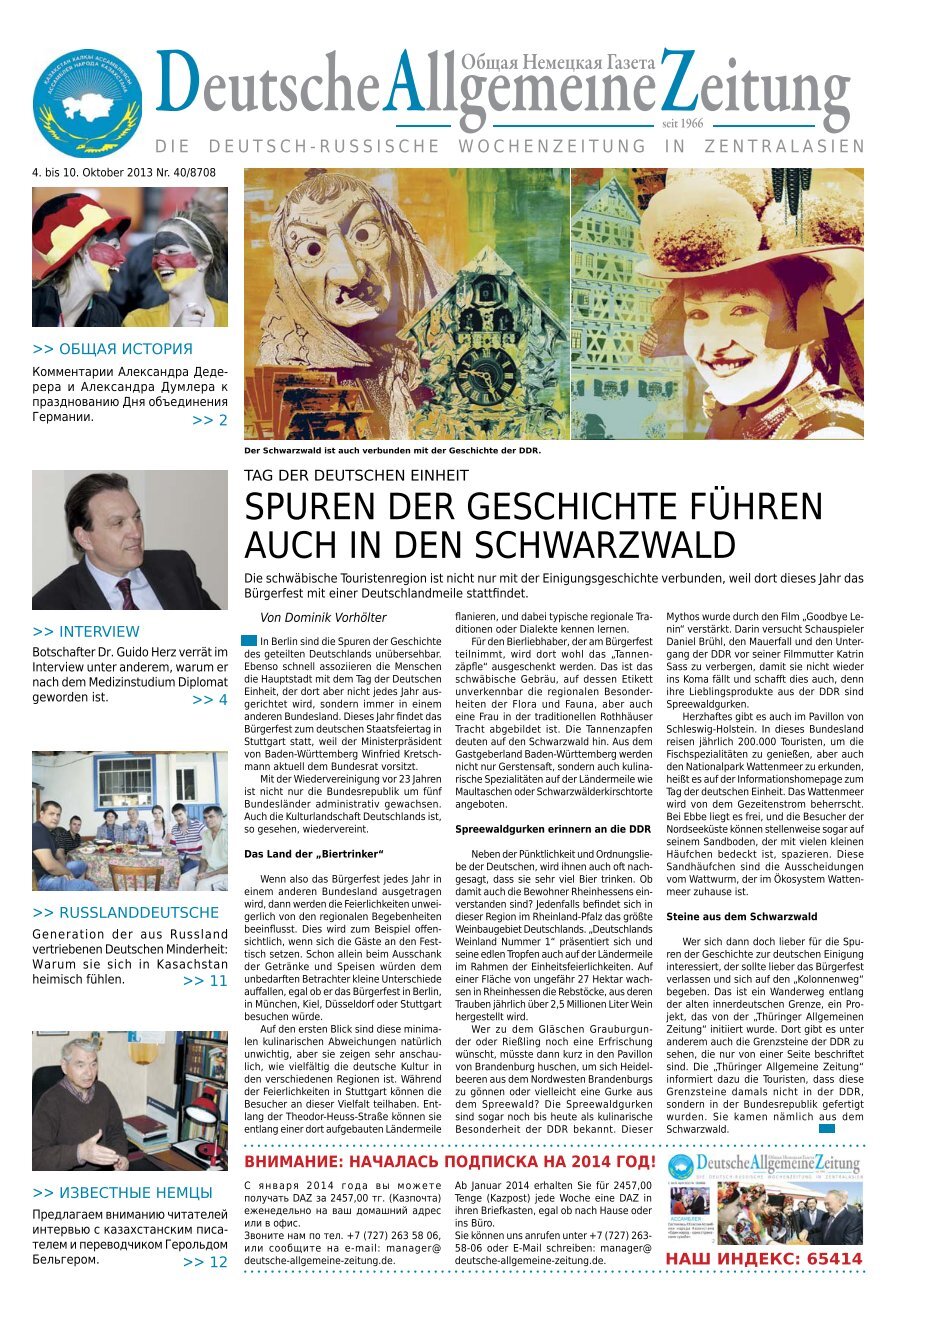 2 Free Magazines From Deutsche Allgemeine Zeitung De